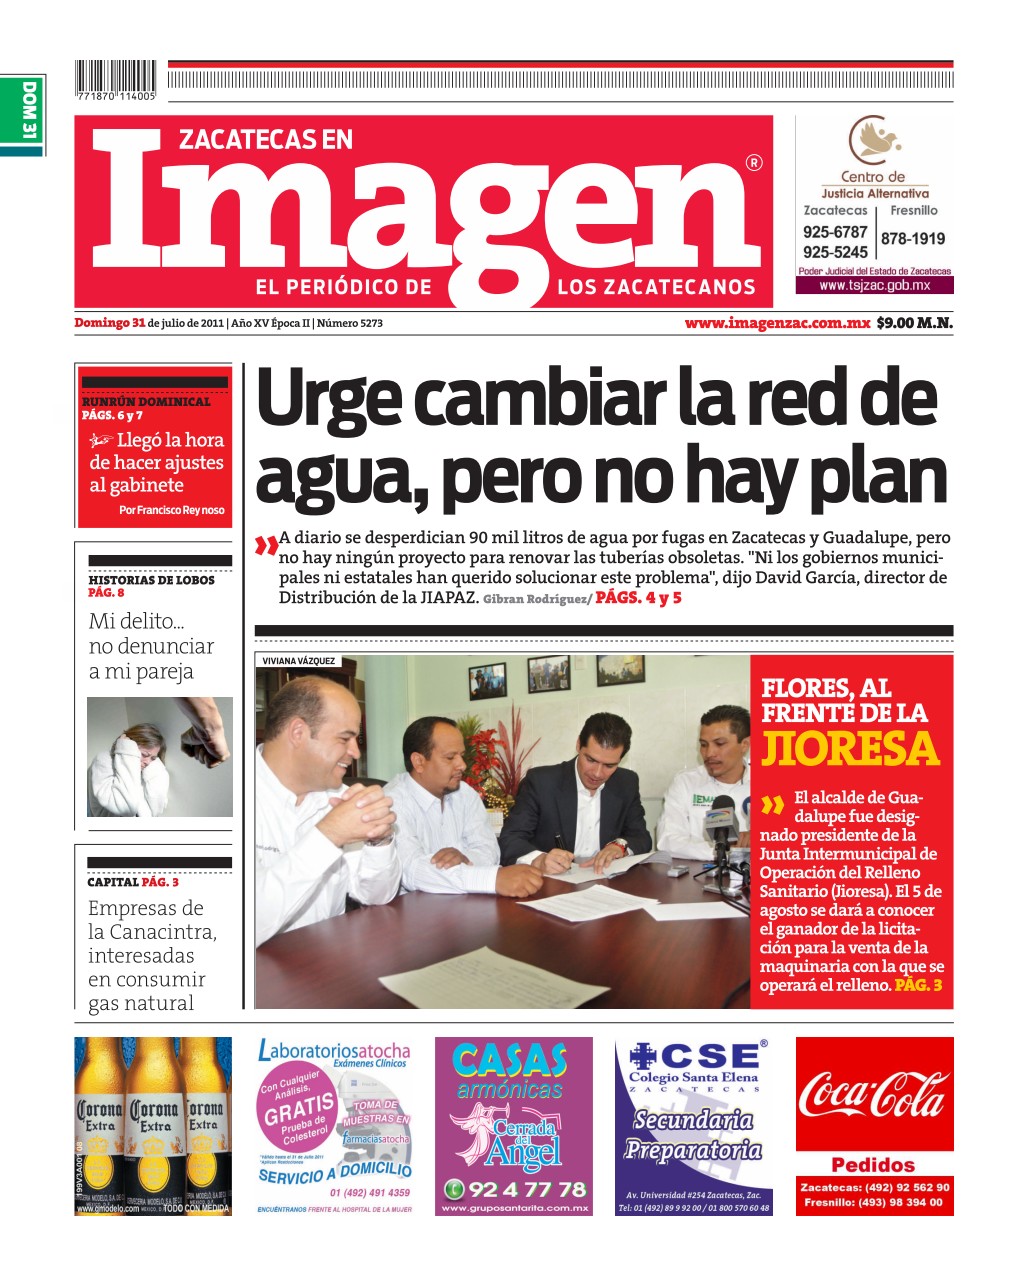 Imagen Zacatecas edición del 31 de Julio 2011